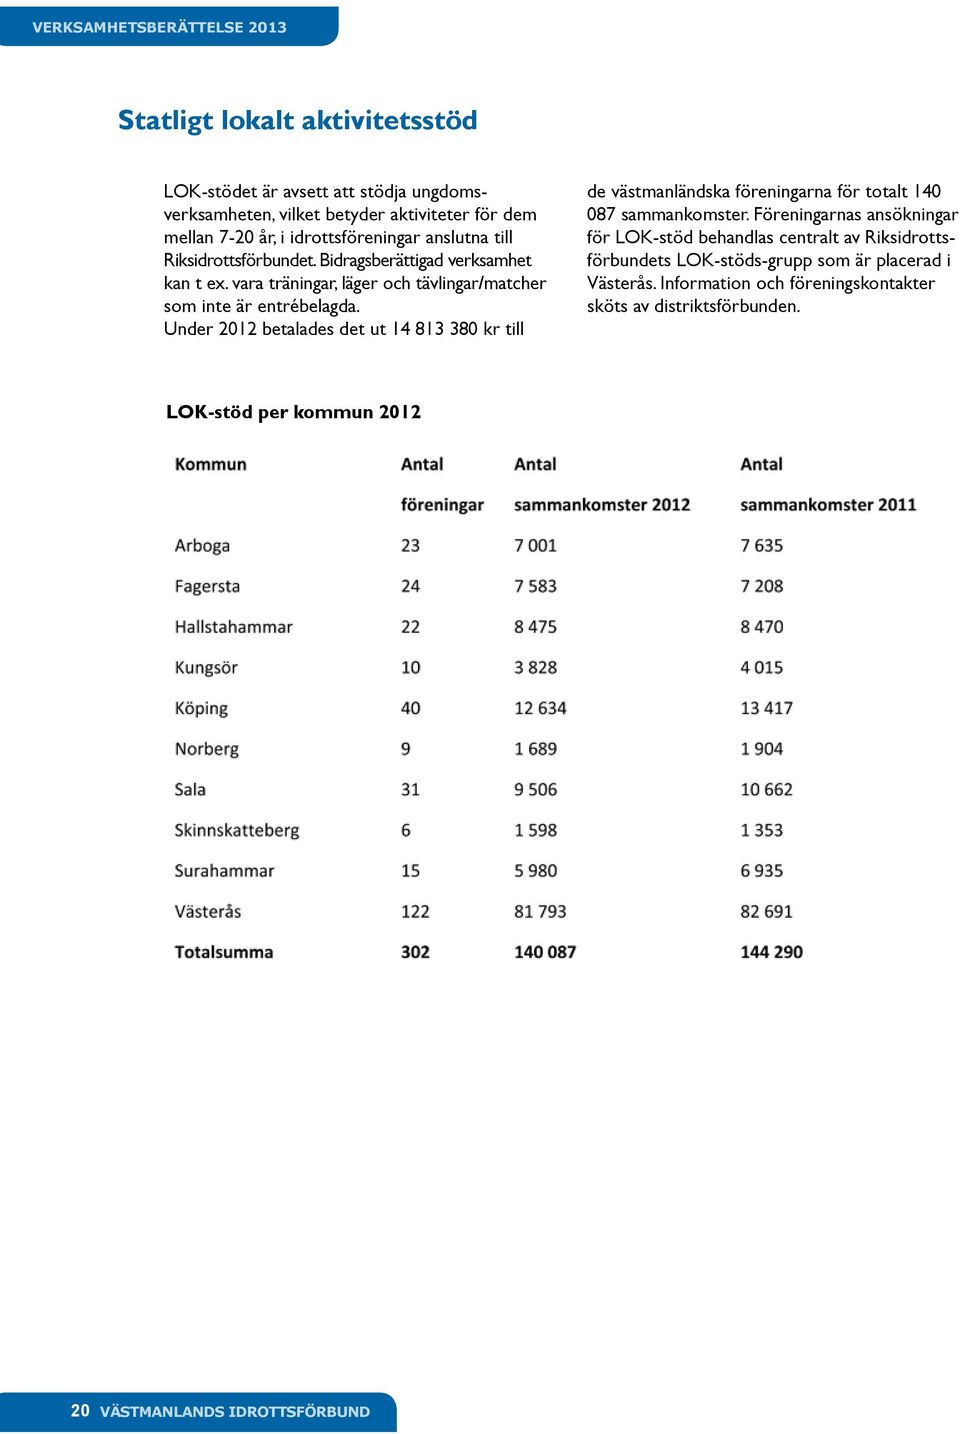 Under 2012 betalades det ut 14 813 380 kr till de västmanländska föreningarna för totalt 140 087 sammankomster.